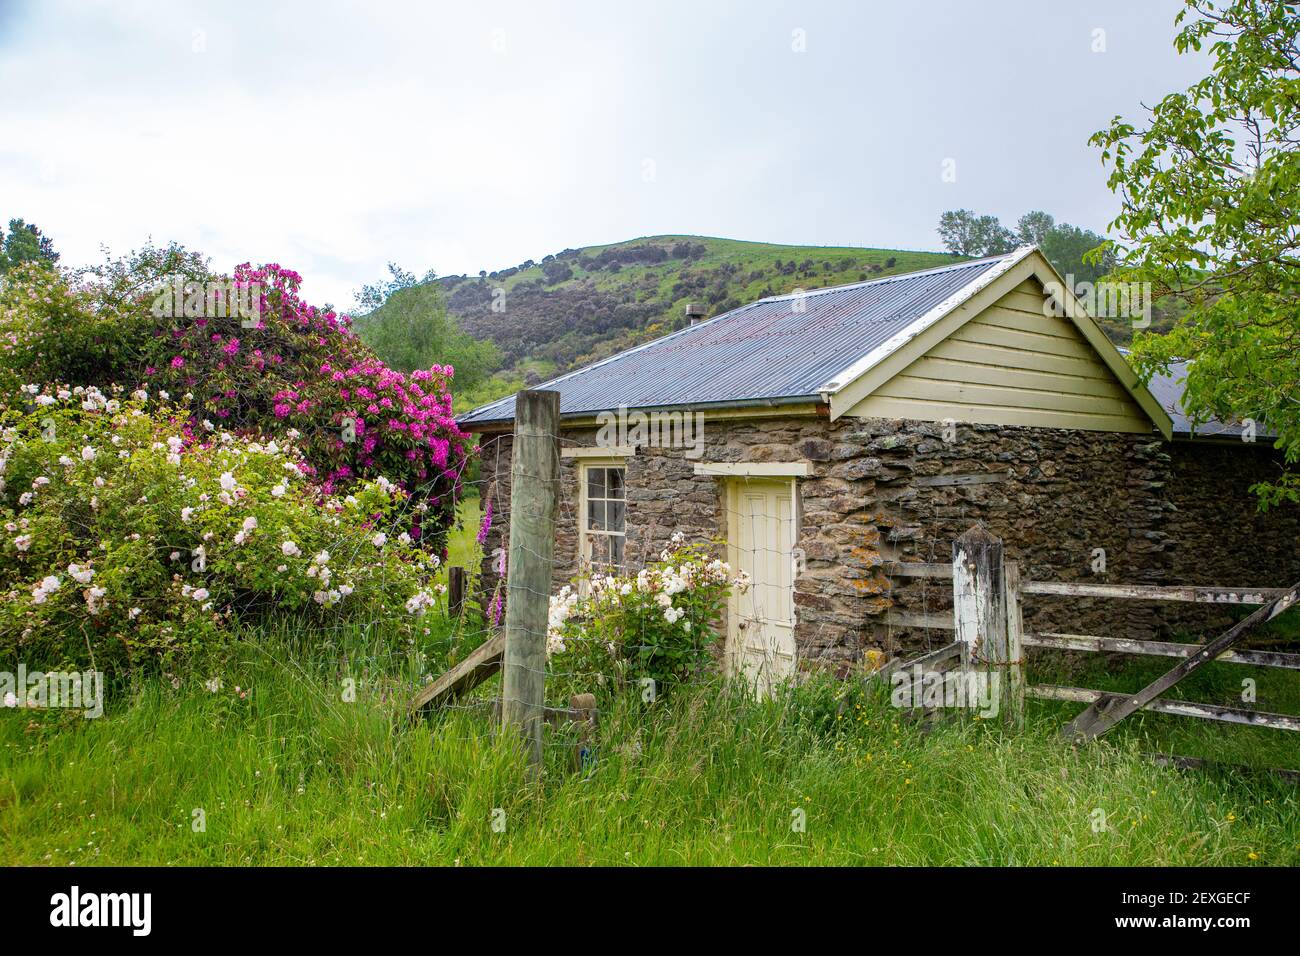 Una encantadora casa de campo de piedra histórica de los primeros colonos se encuentra junto a una carretera rural en Central Otago, Nueva Zelanda Foto de stock